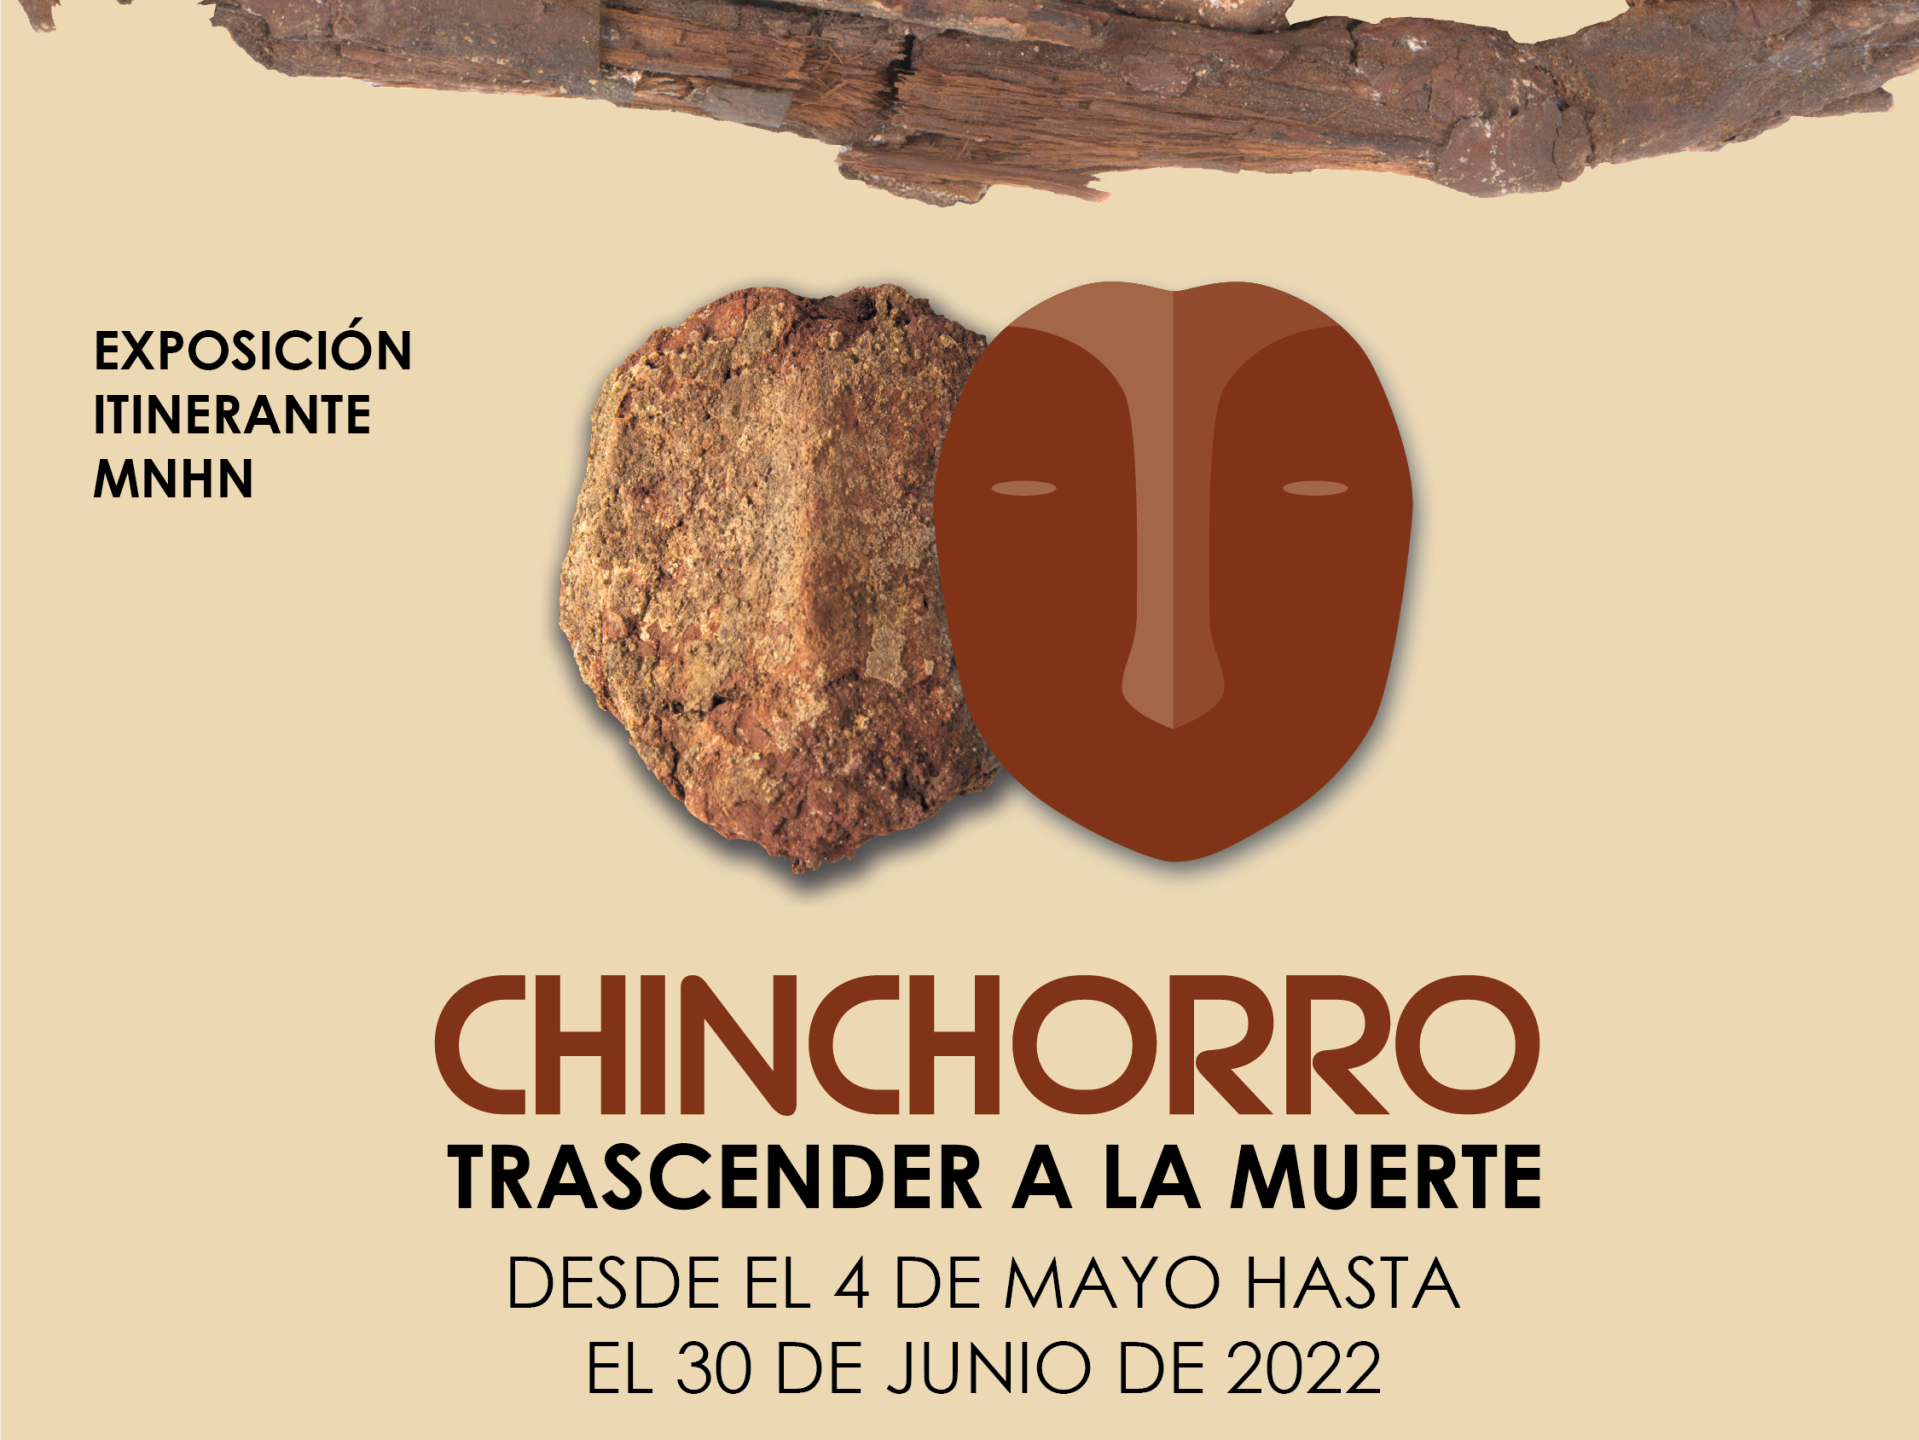 chinchorro